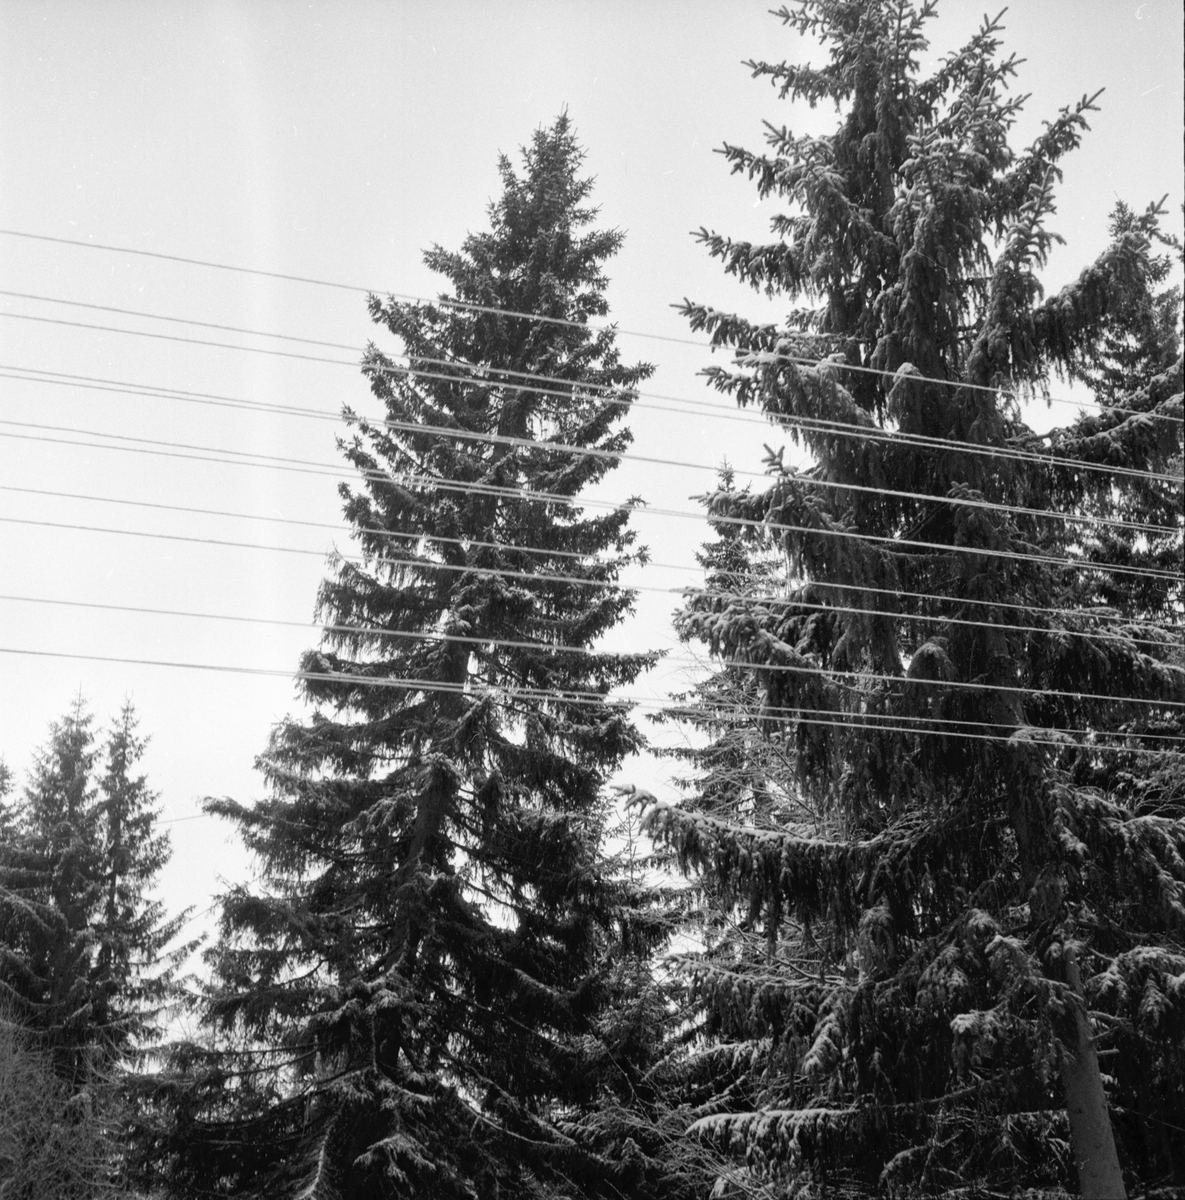 Julgranen från Nianfors.
8/12 1958